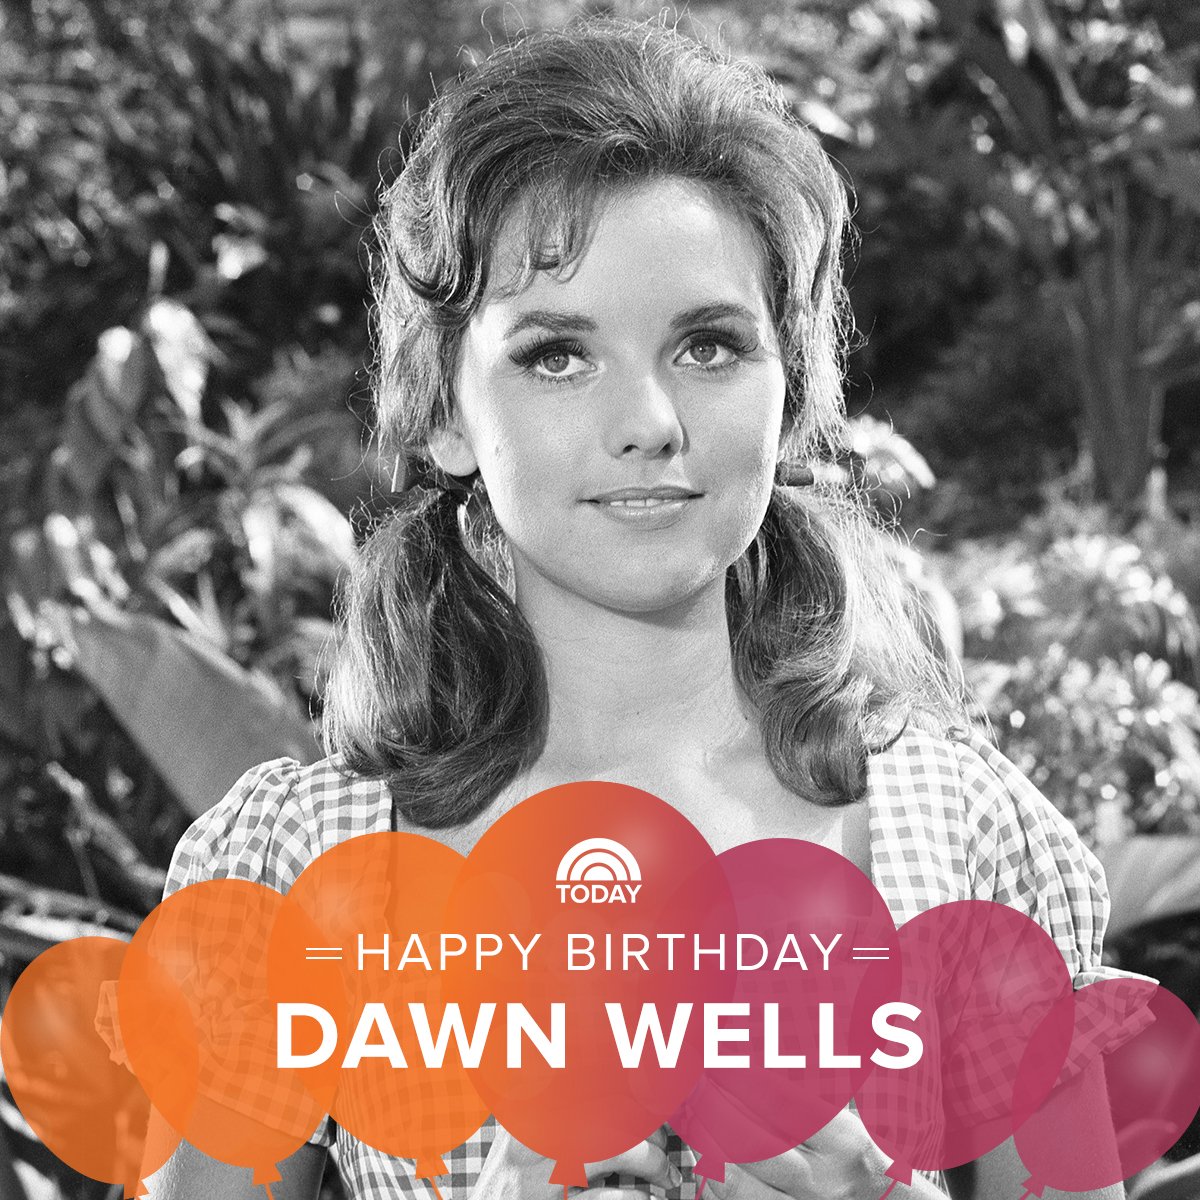 Happy 80th birthday, Dawn Wells! 